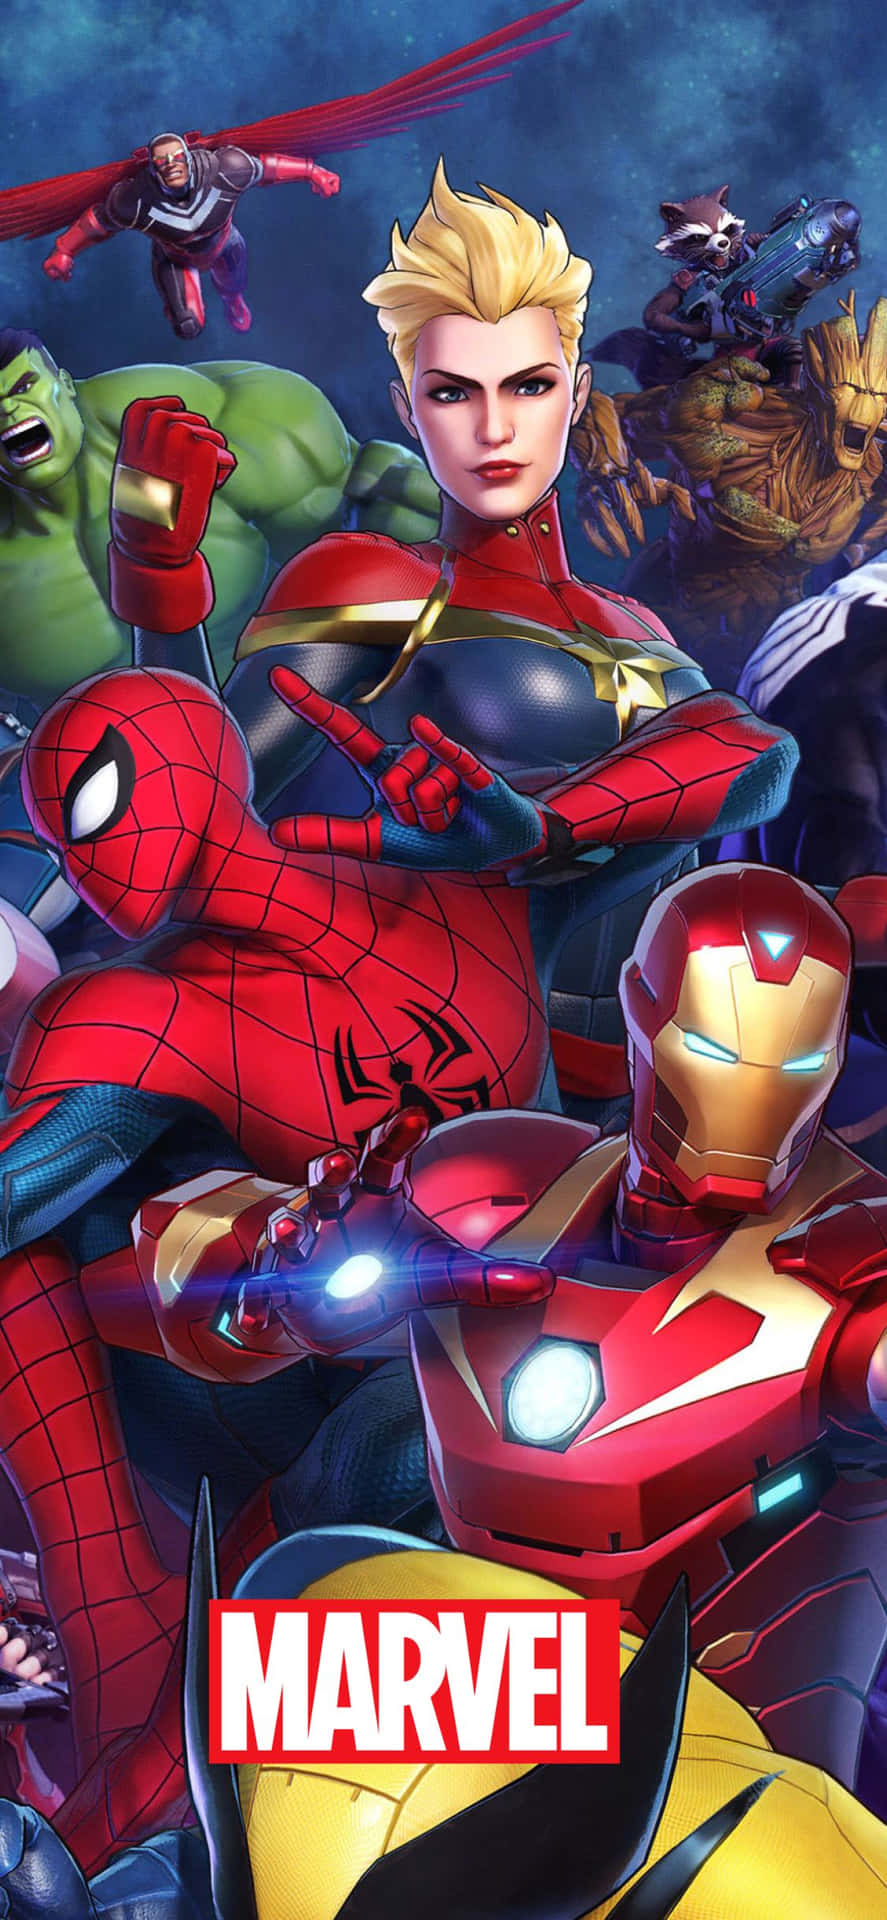 Diversosplanos De Fundo De Super-heróis Marvel Para Iphone Xs.